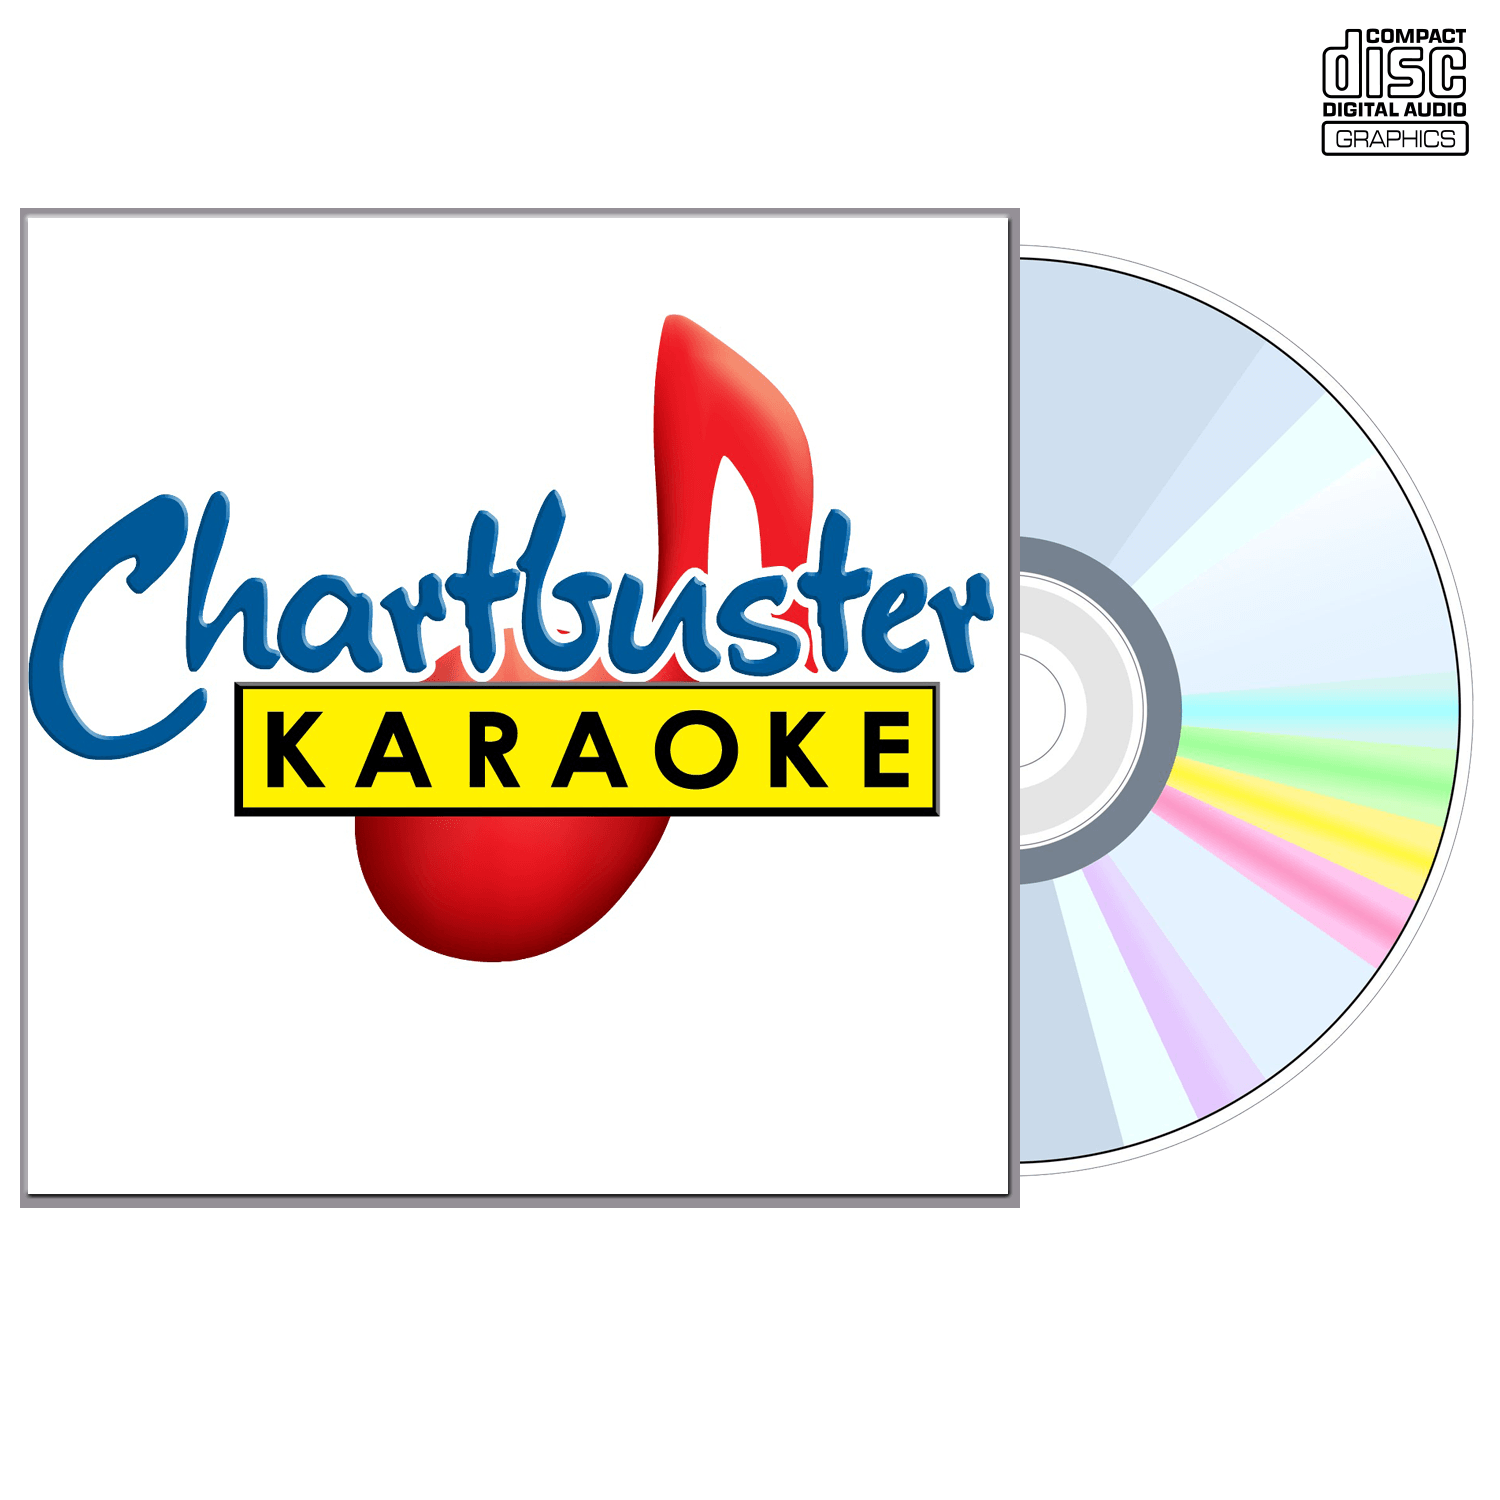 Uncle Kracker - CD+G - Chartbuster Karaoke - Karaoke Home Entertainment